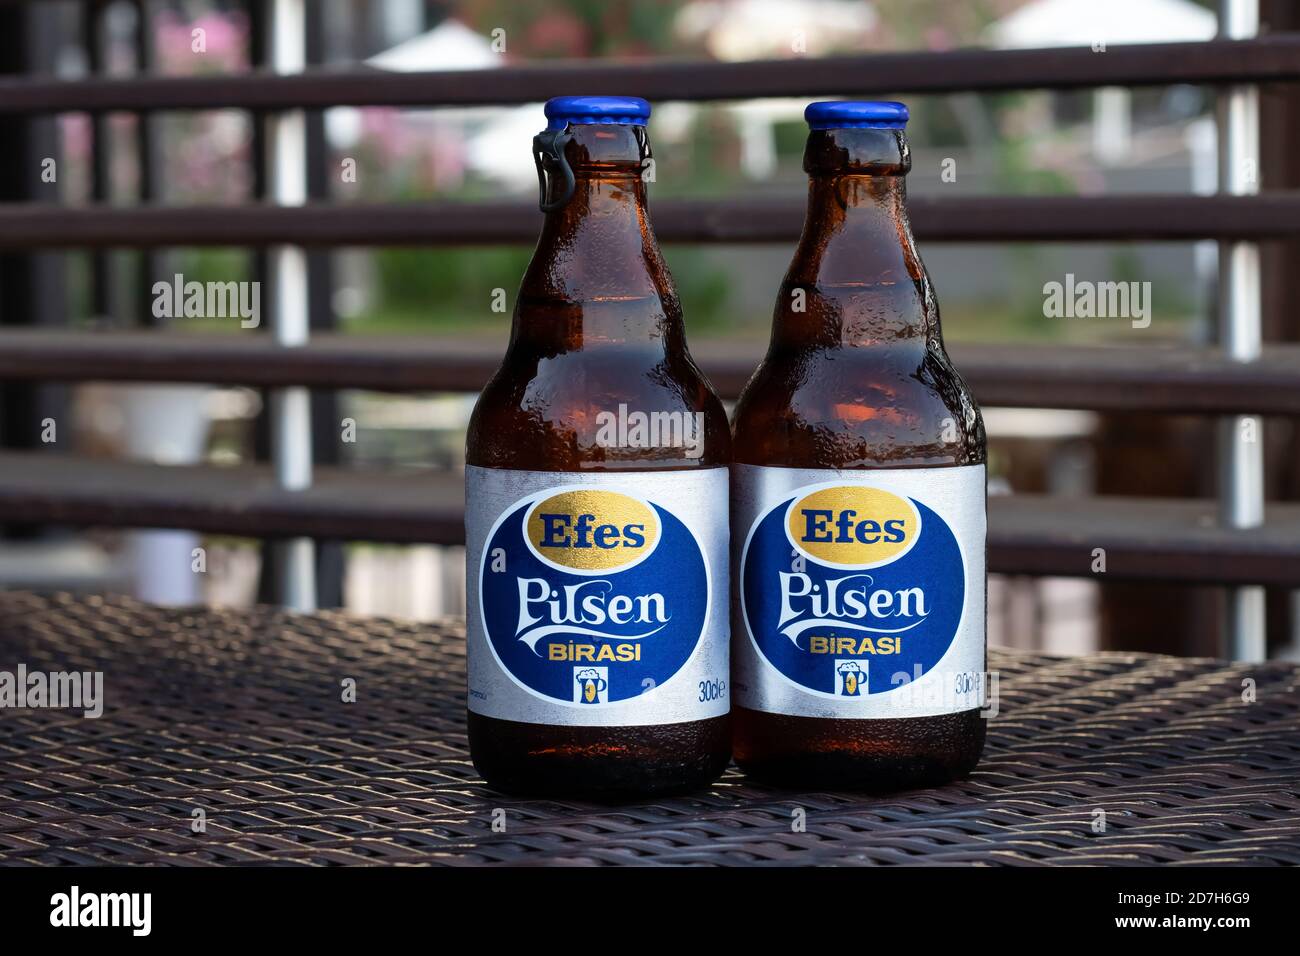 Antalya, Turchia, 18 luglio 2020: Birra turca raffreddata Efes Pilsen in bottiglia сlosed. Bevande alcoliche rinfrescanti in un bar, pub. Editoriale illustrativo Foto Stock